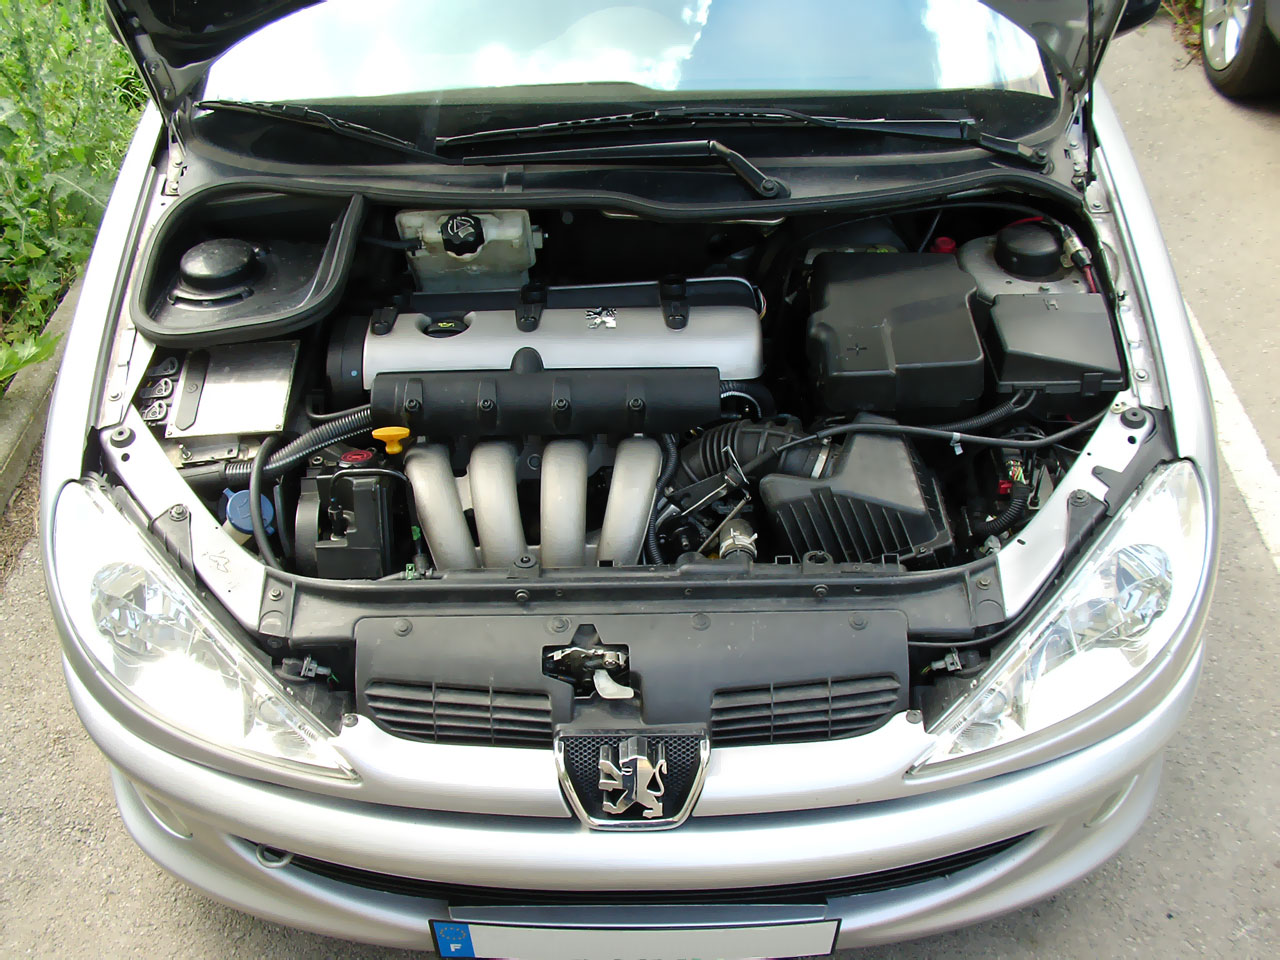 REPROG MOTEUR ! Peugeot 206 RC préparée par un PRO ⎥Épisode 6 